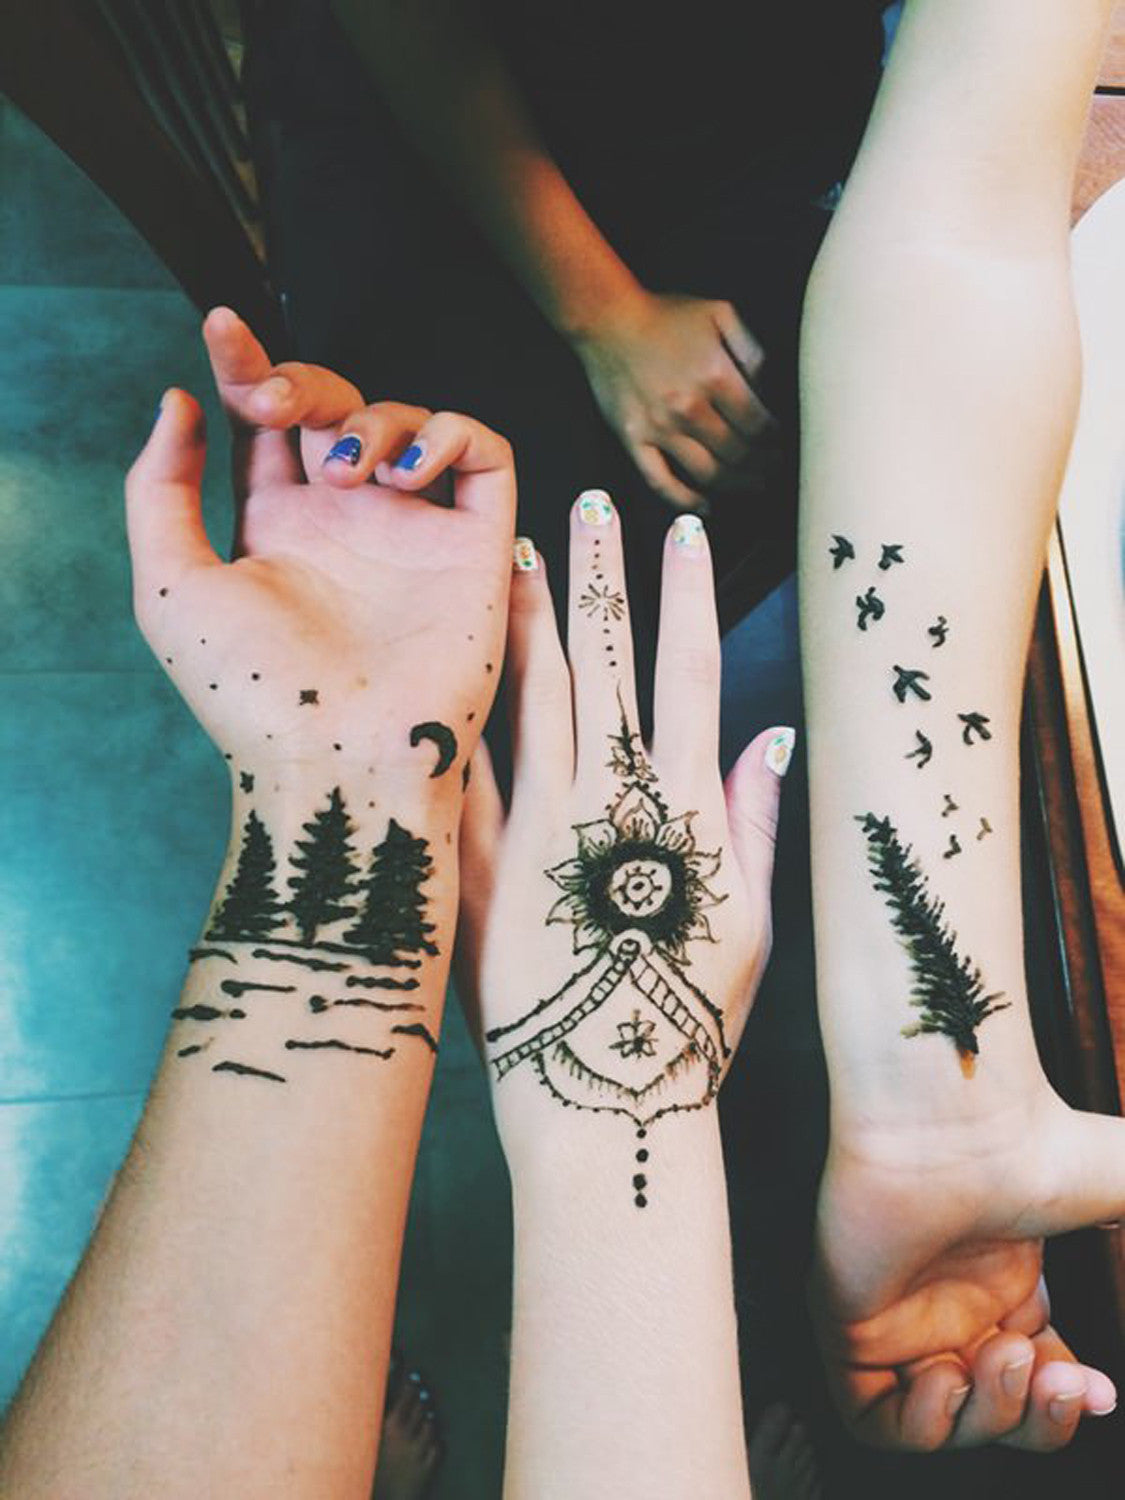 Cute Henna Forearm Arm Tattoos Ideas for Women - Sparrow Night - MyBodiArt.com